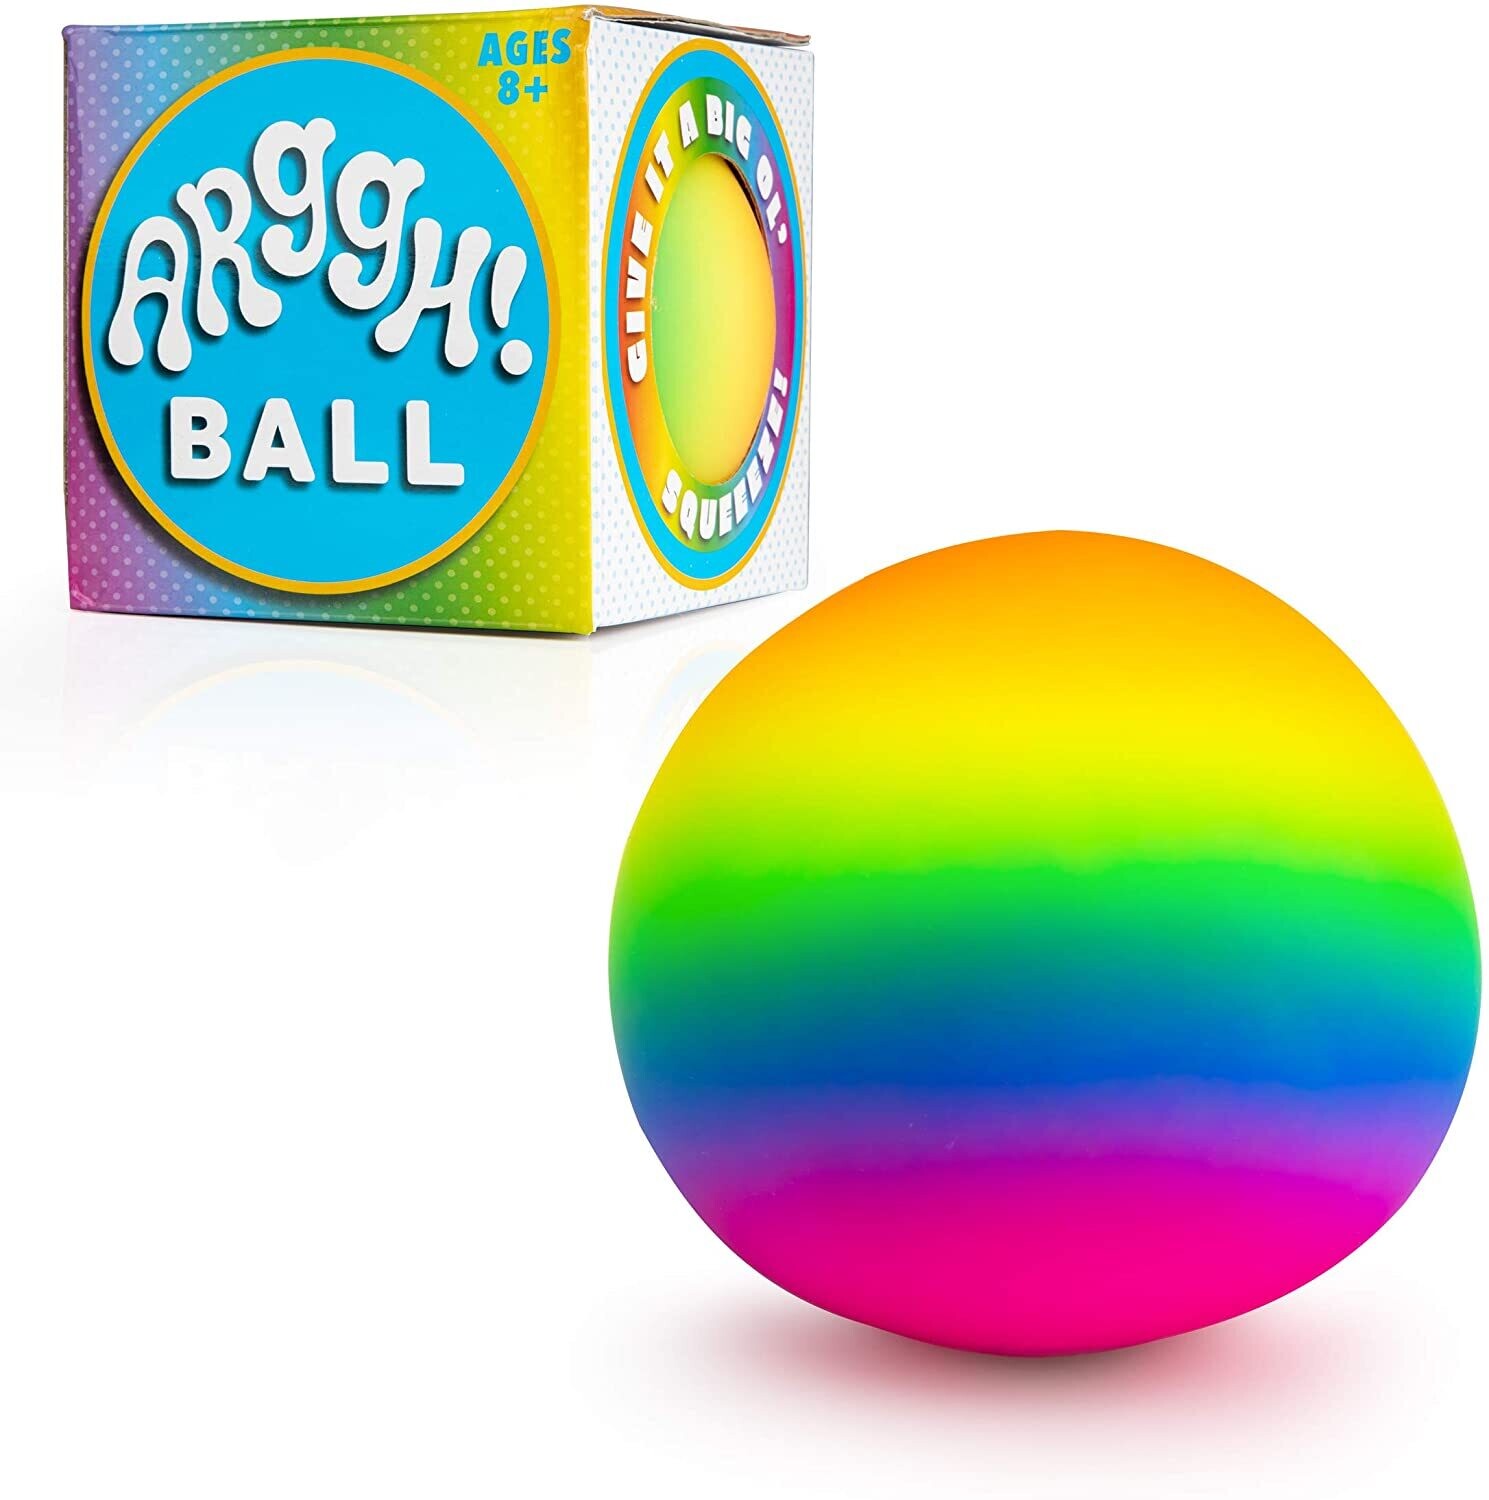 Arggh Ball Rainbow